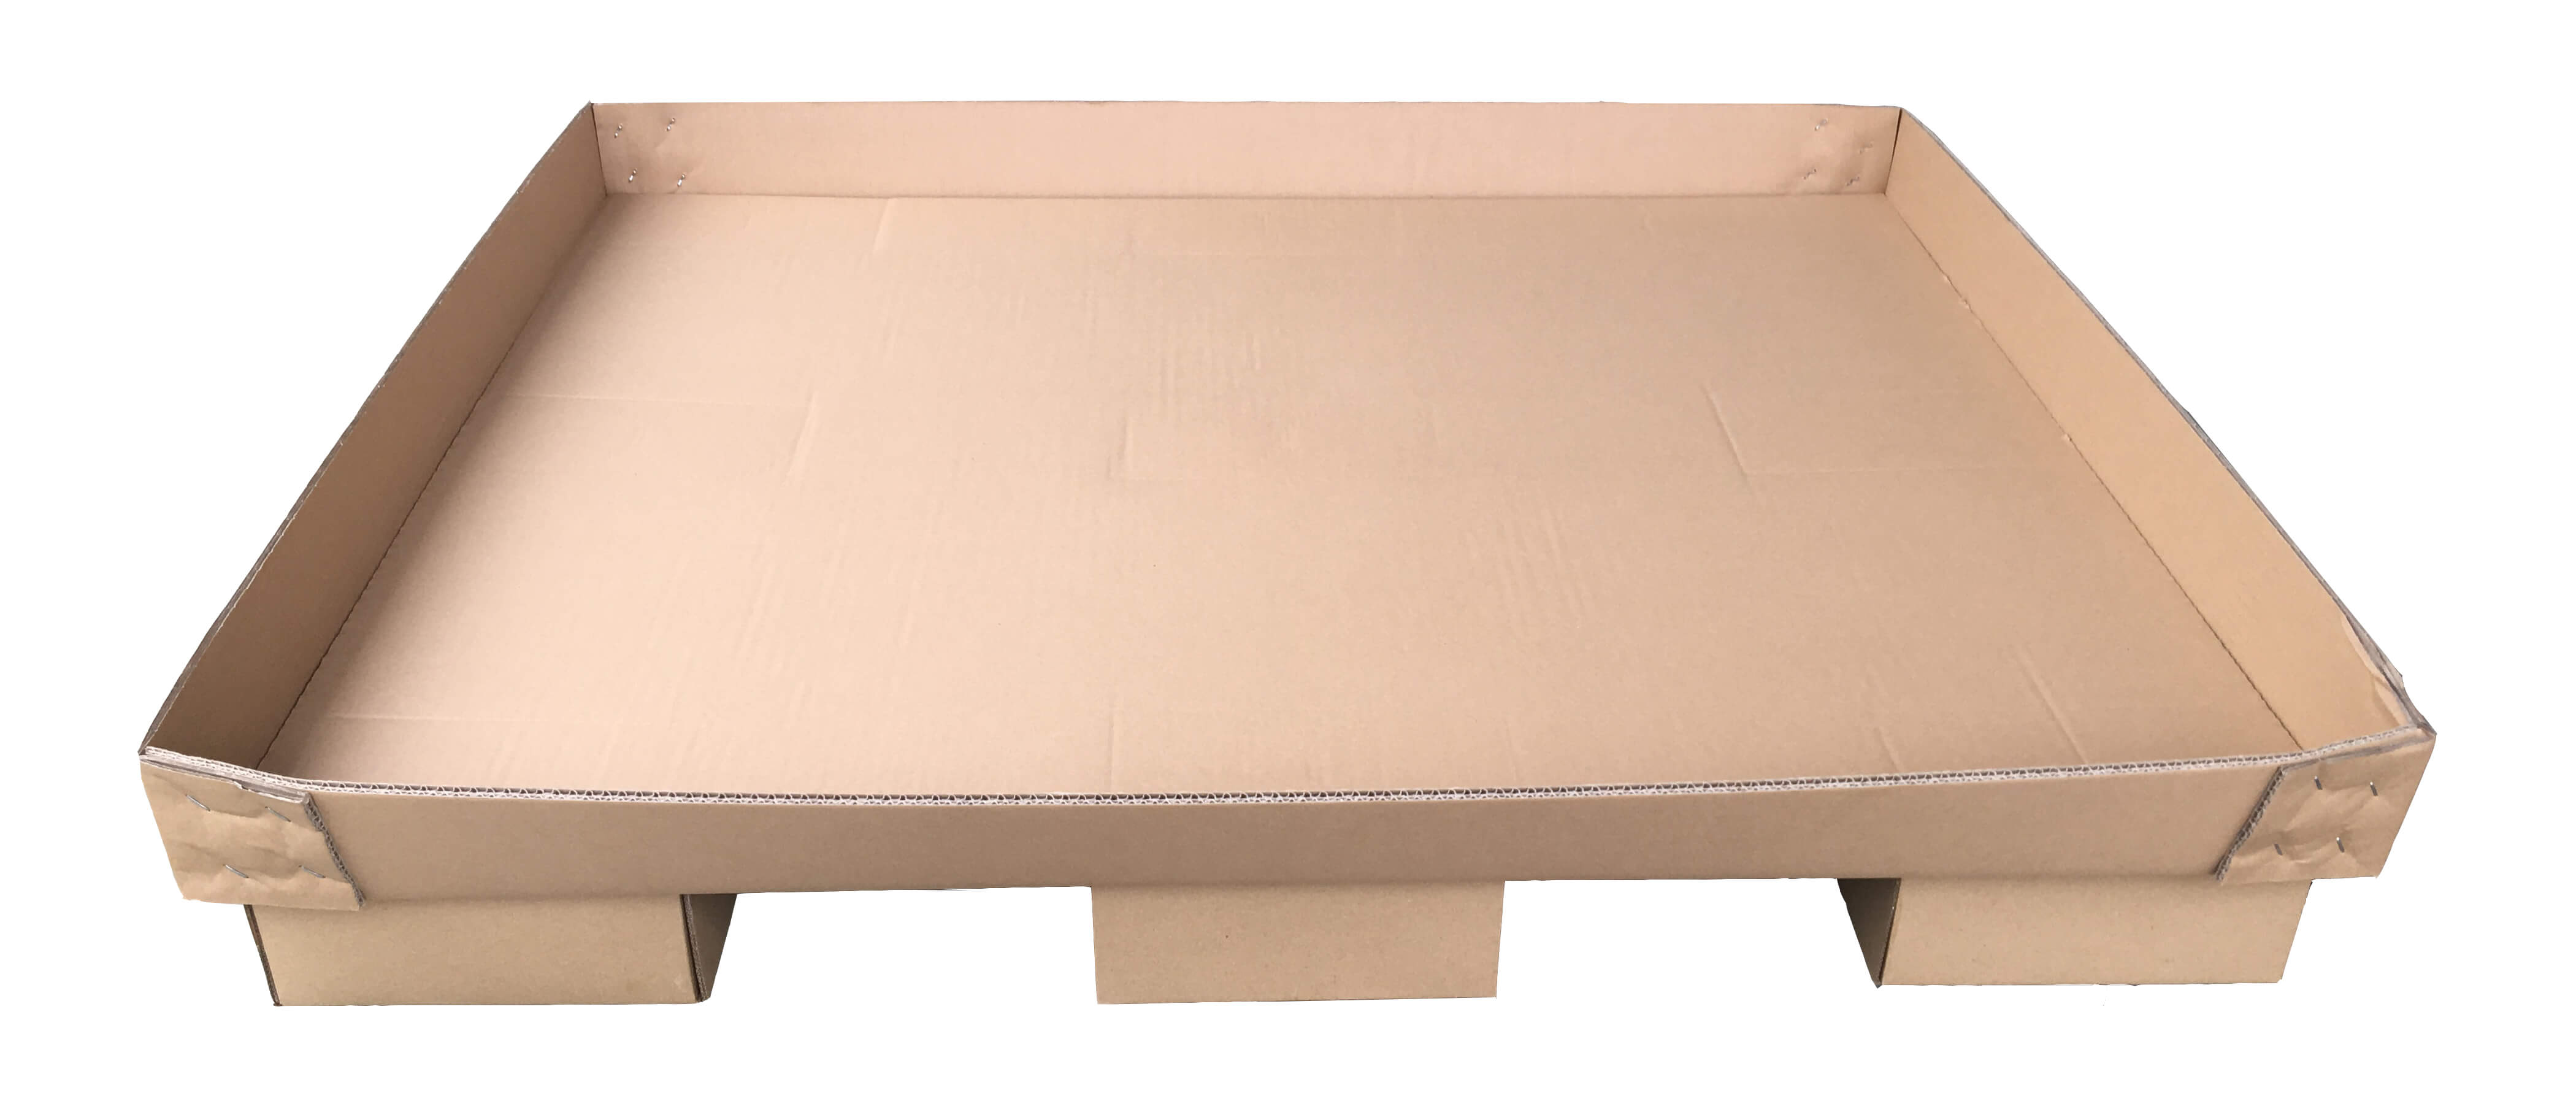 Paper Pallet / Cardboard pallet